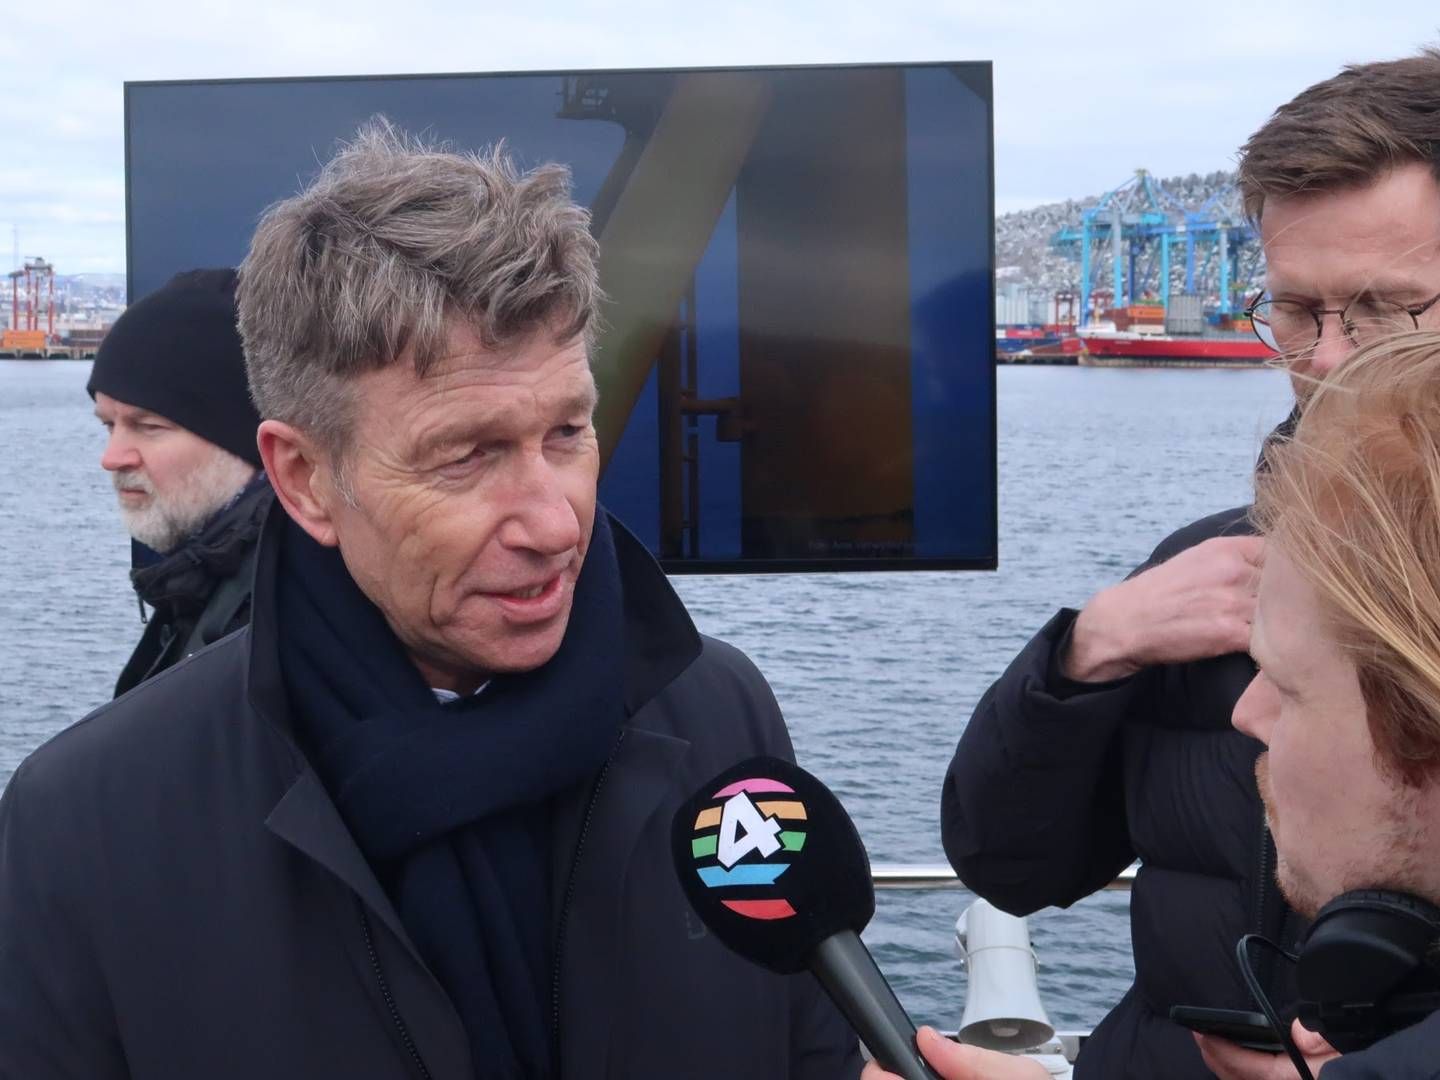 Olje og energiminister Terje Aasland (Ap) ønsker å innskrenke innsynsretten til prekvalifiseringssaker og tildelinger av havvindprosjekter. Det reagerer Fiskebåt – Havfiskeflåtens interesseorganisasjon – kraftig på | Foto: Anders Lie Brenna